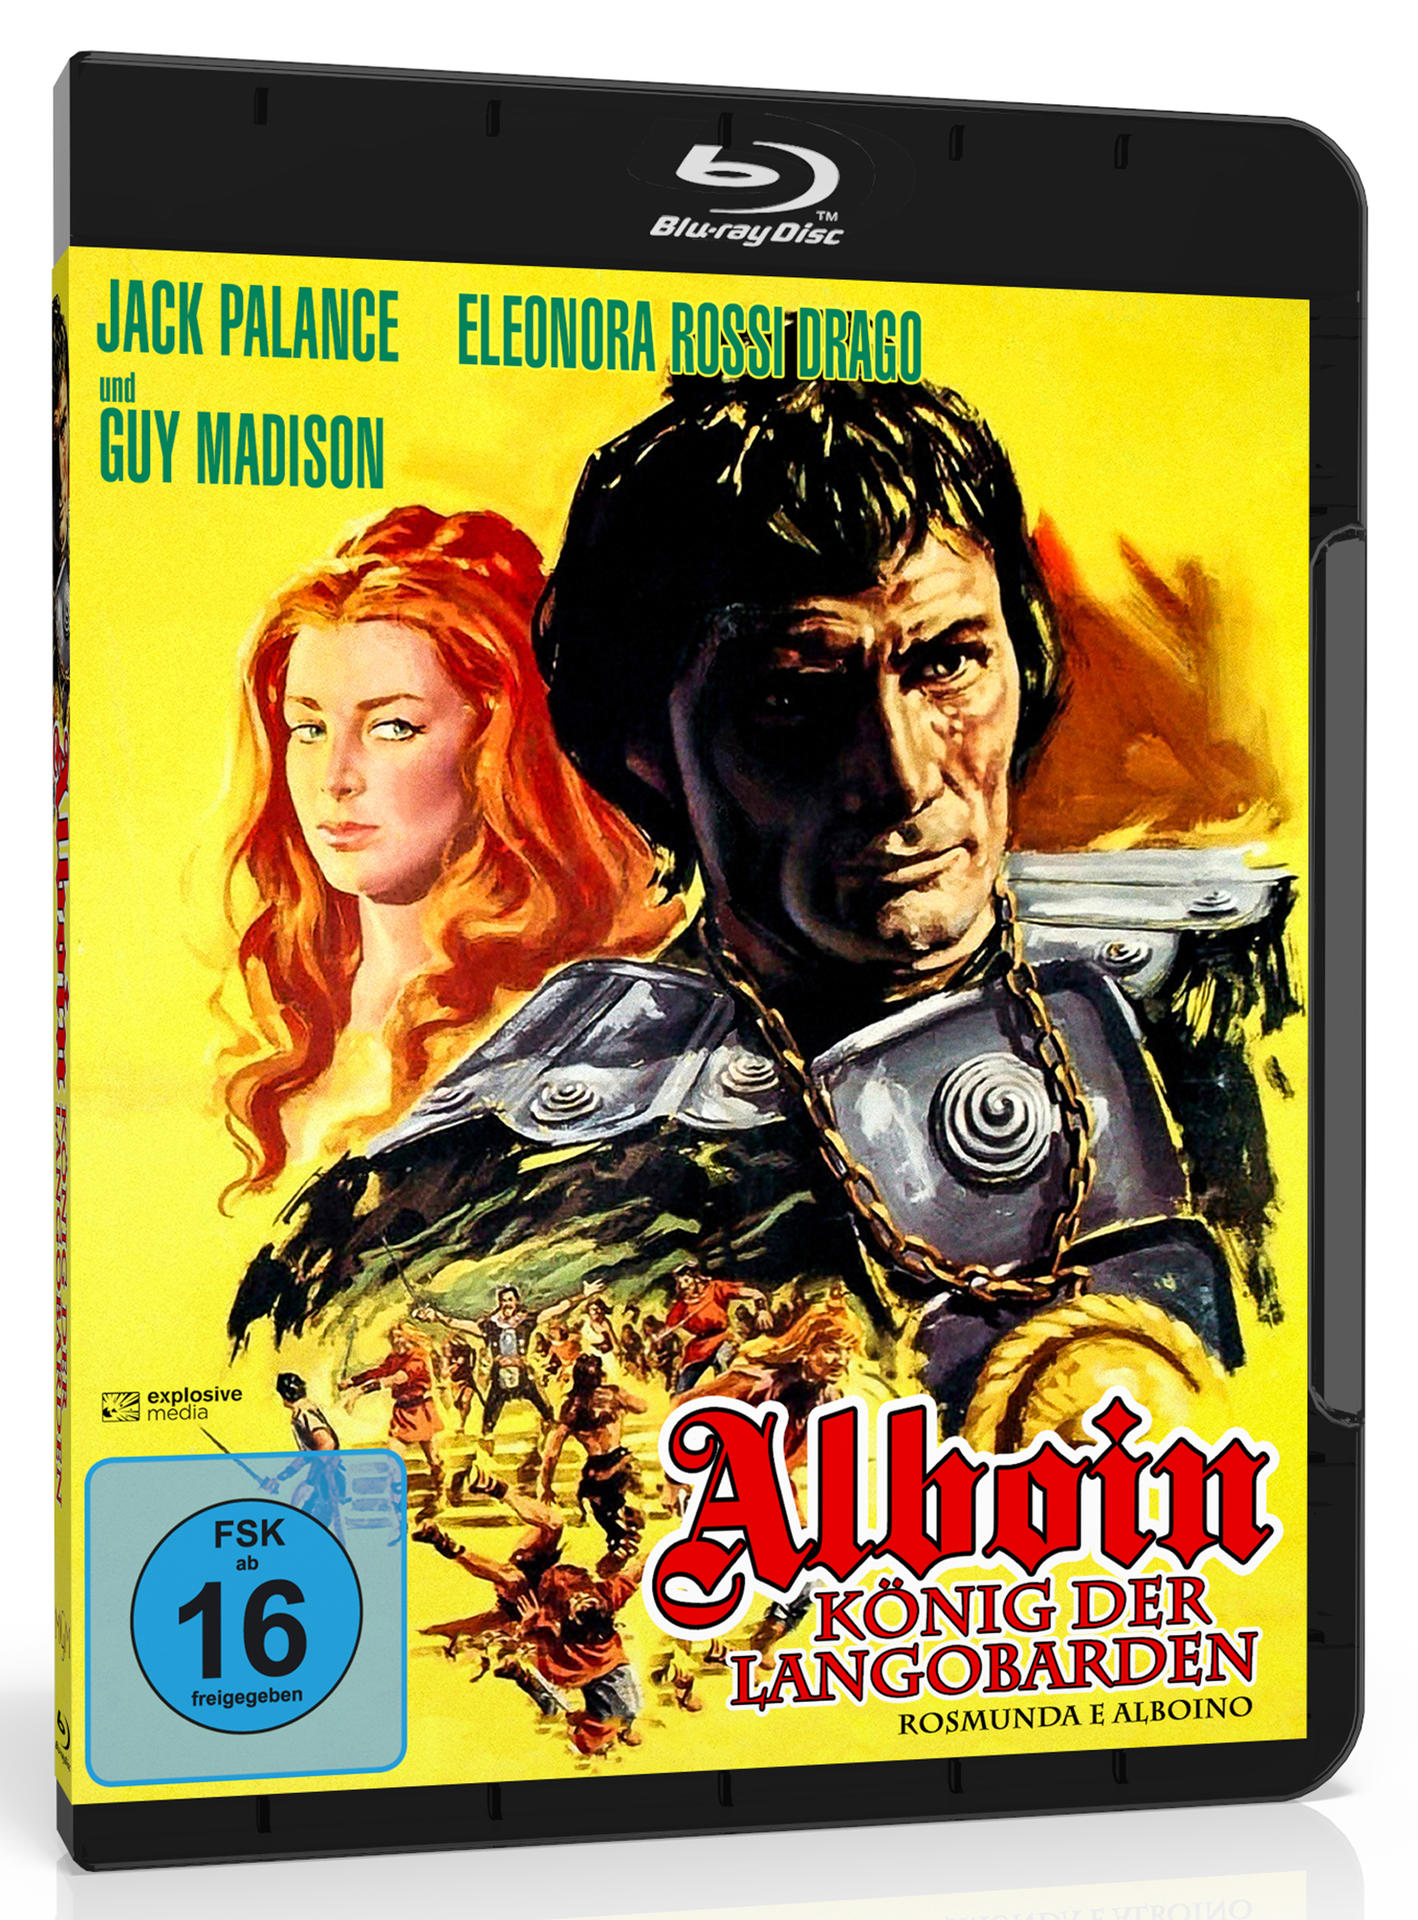 Alboin, König der Blu-ray Langobarden